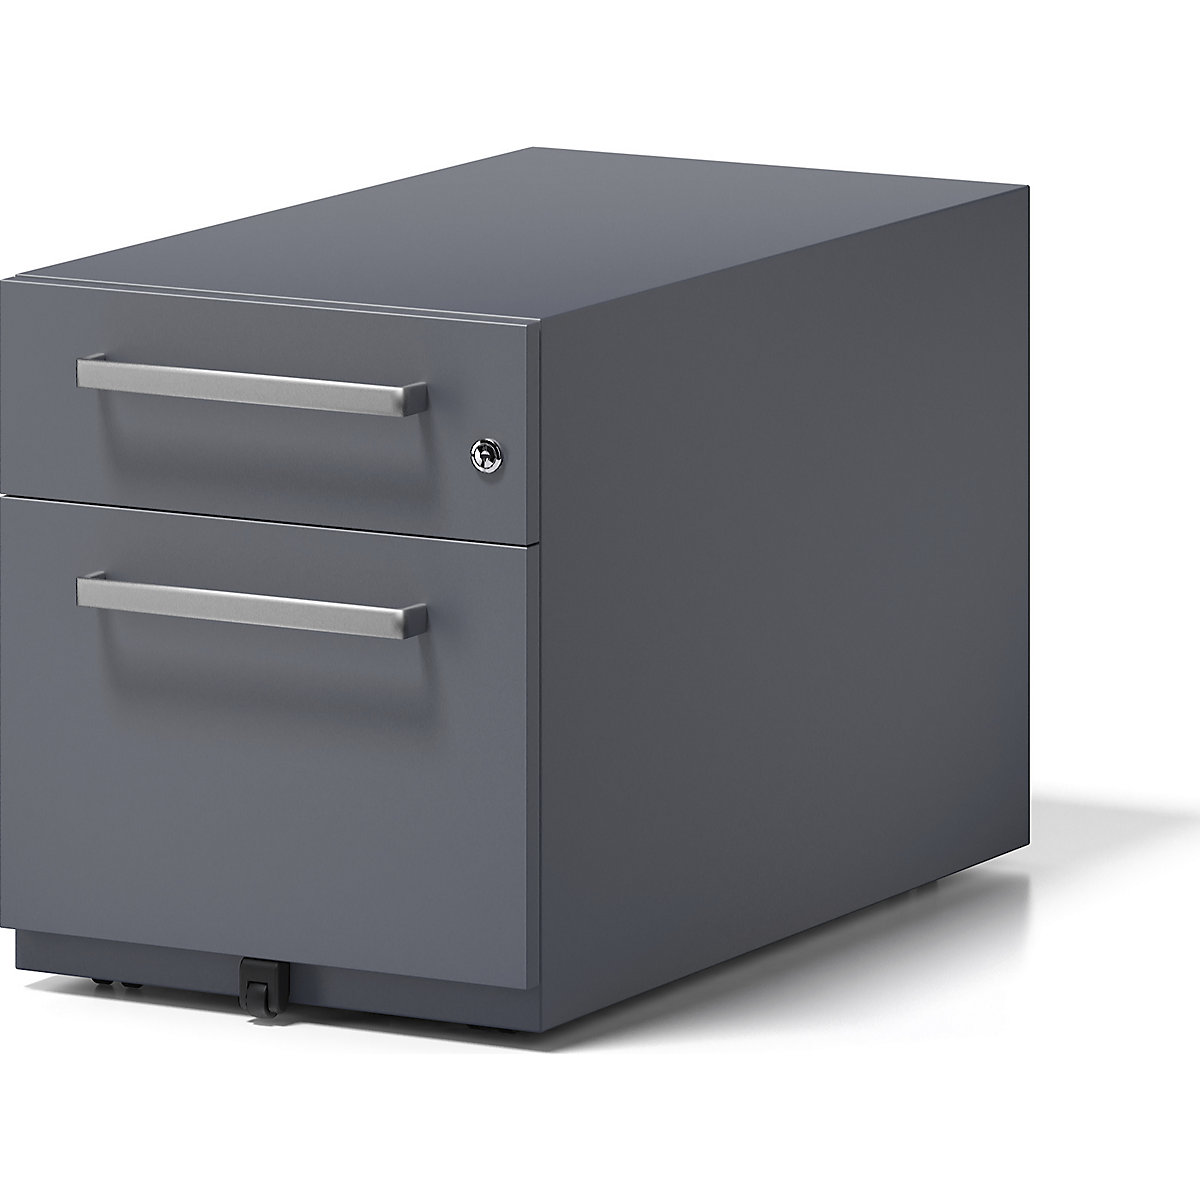 Pojízdný kontejner Note™, s 1 kartotékou pro závěsné složky a 1 univerzální zásuvkou – BISLEY